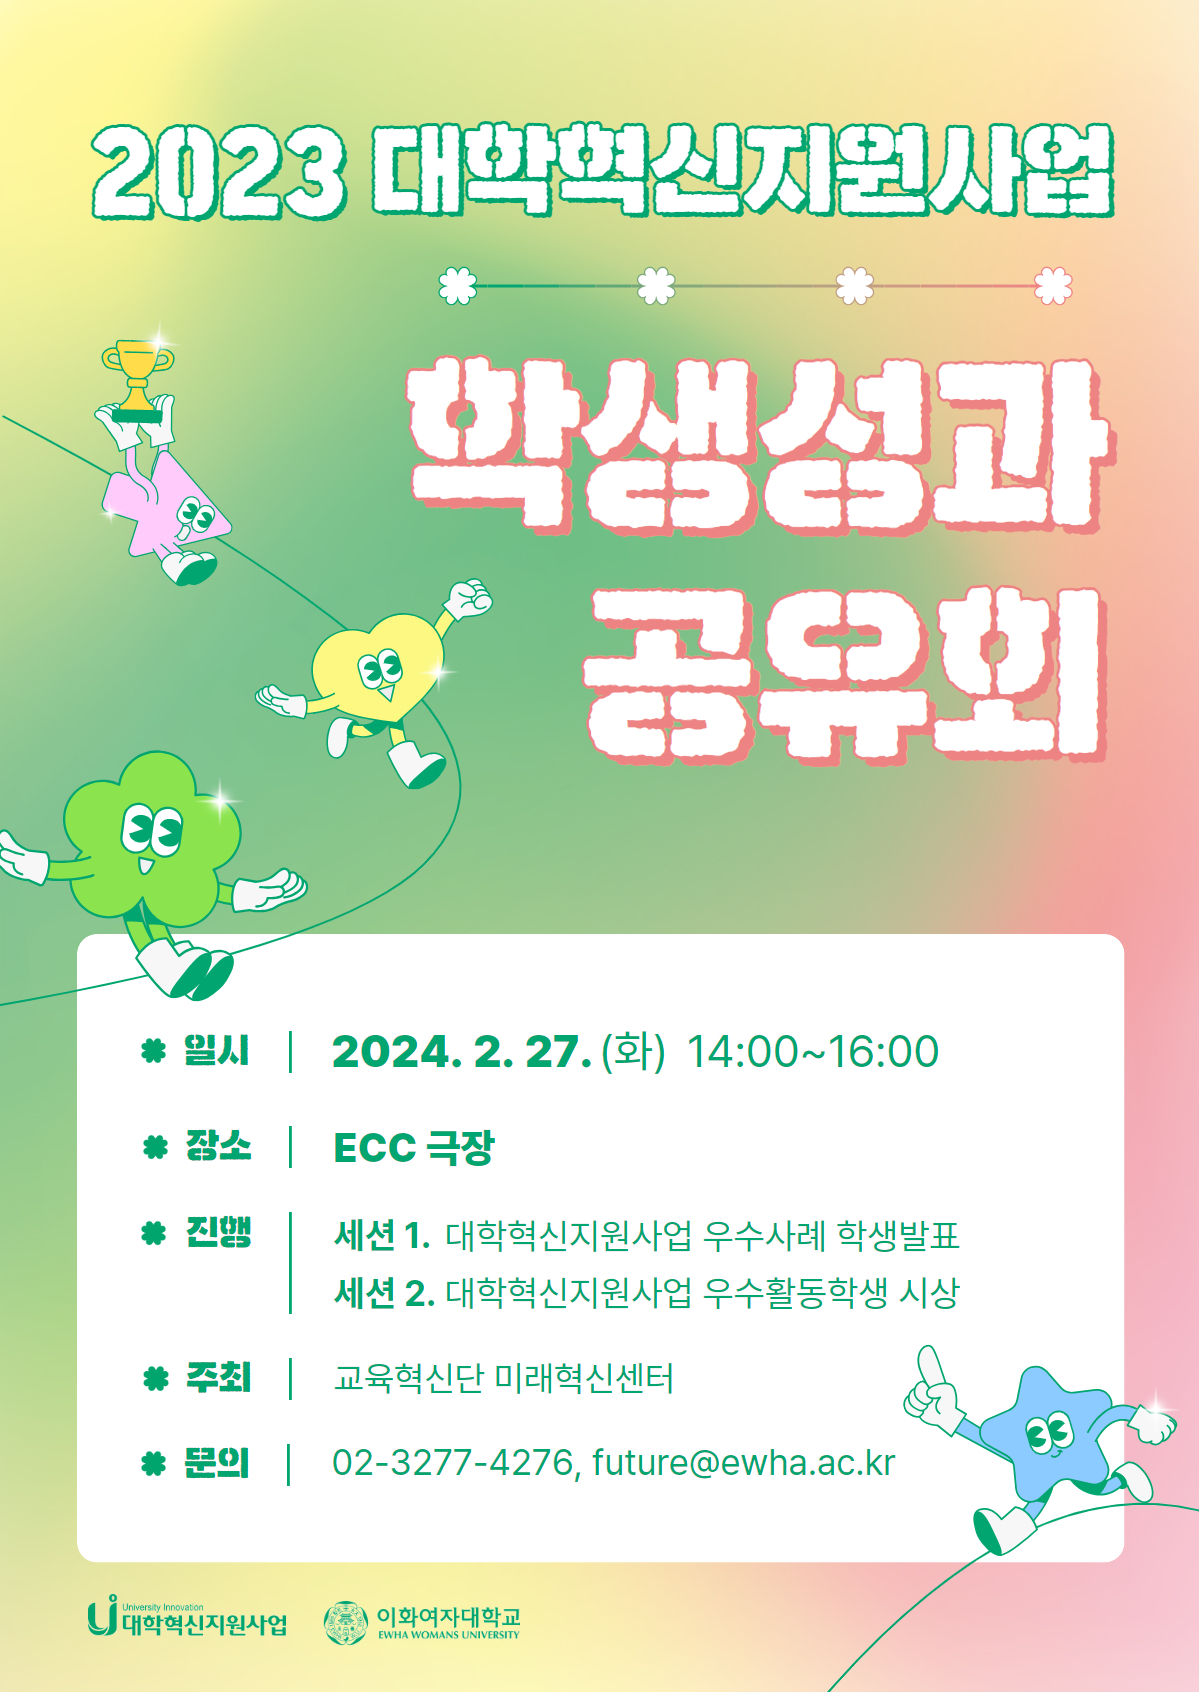 2023 대학혁신지원사업 학생성과 공유회 개최: 2024. 2. 27.(화) 14:00~16:00, ECC 극장